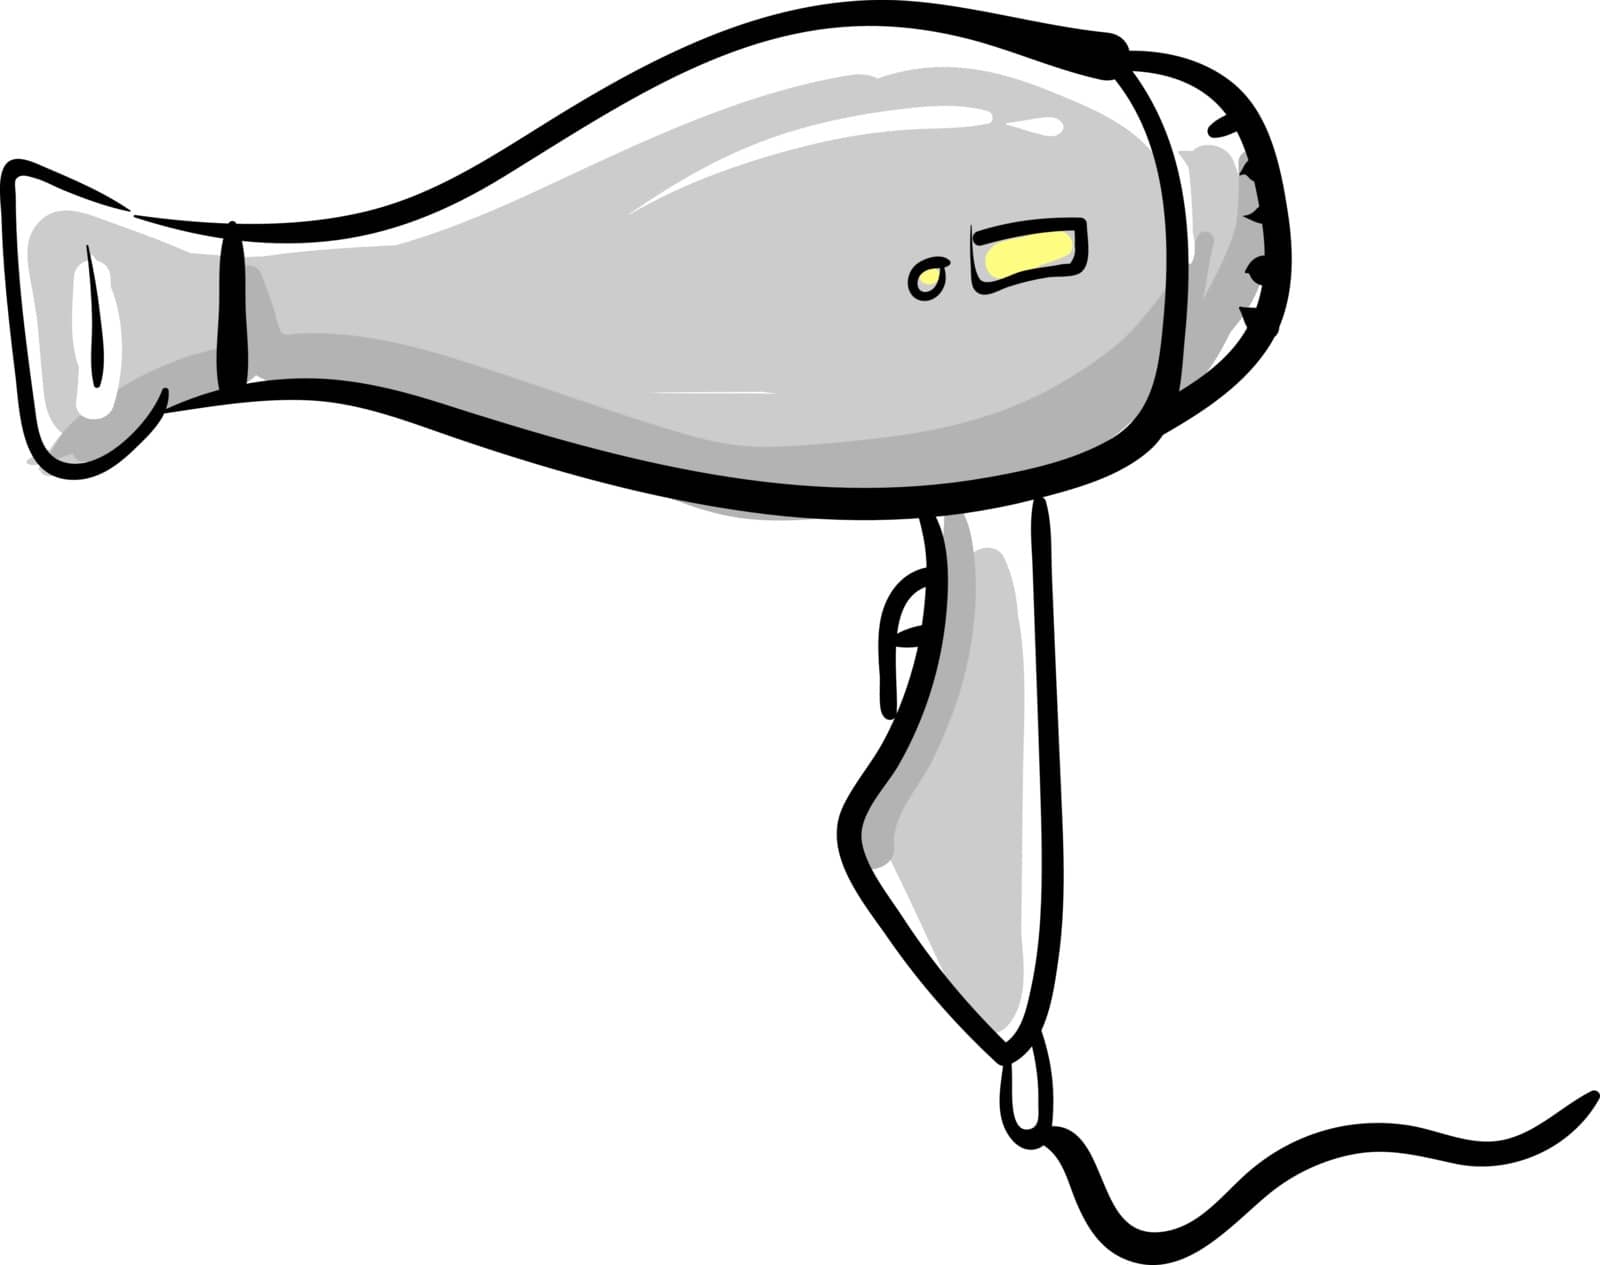 Hair dryer, illustration, vector on white background. by Morphart